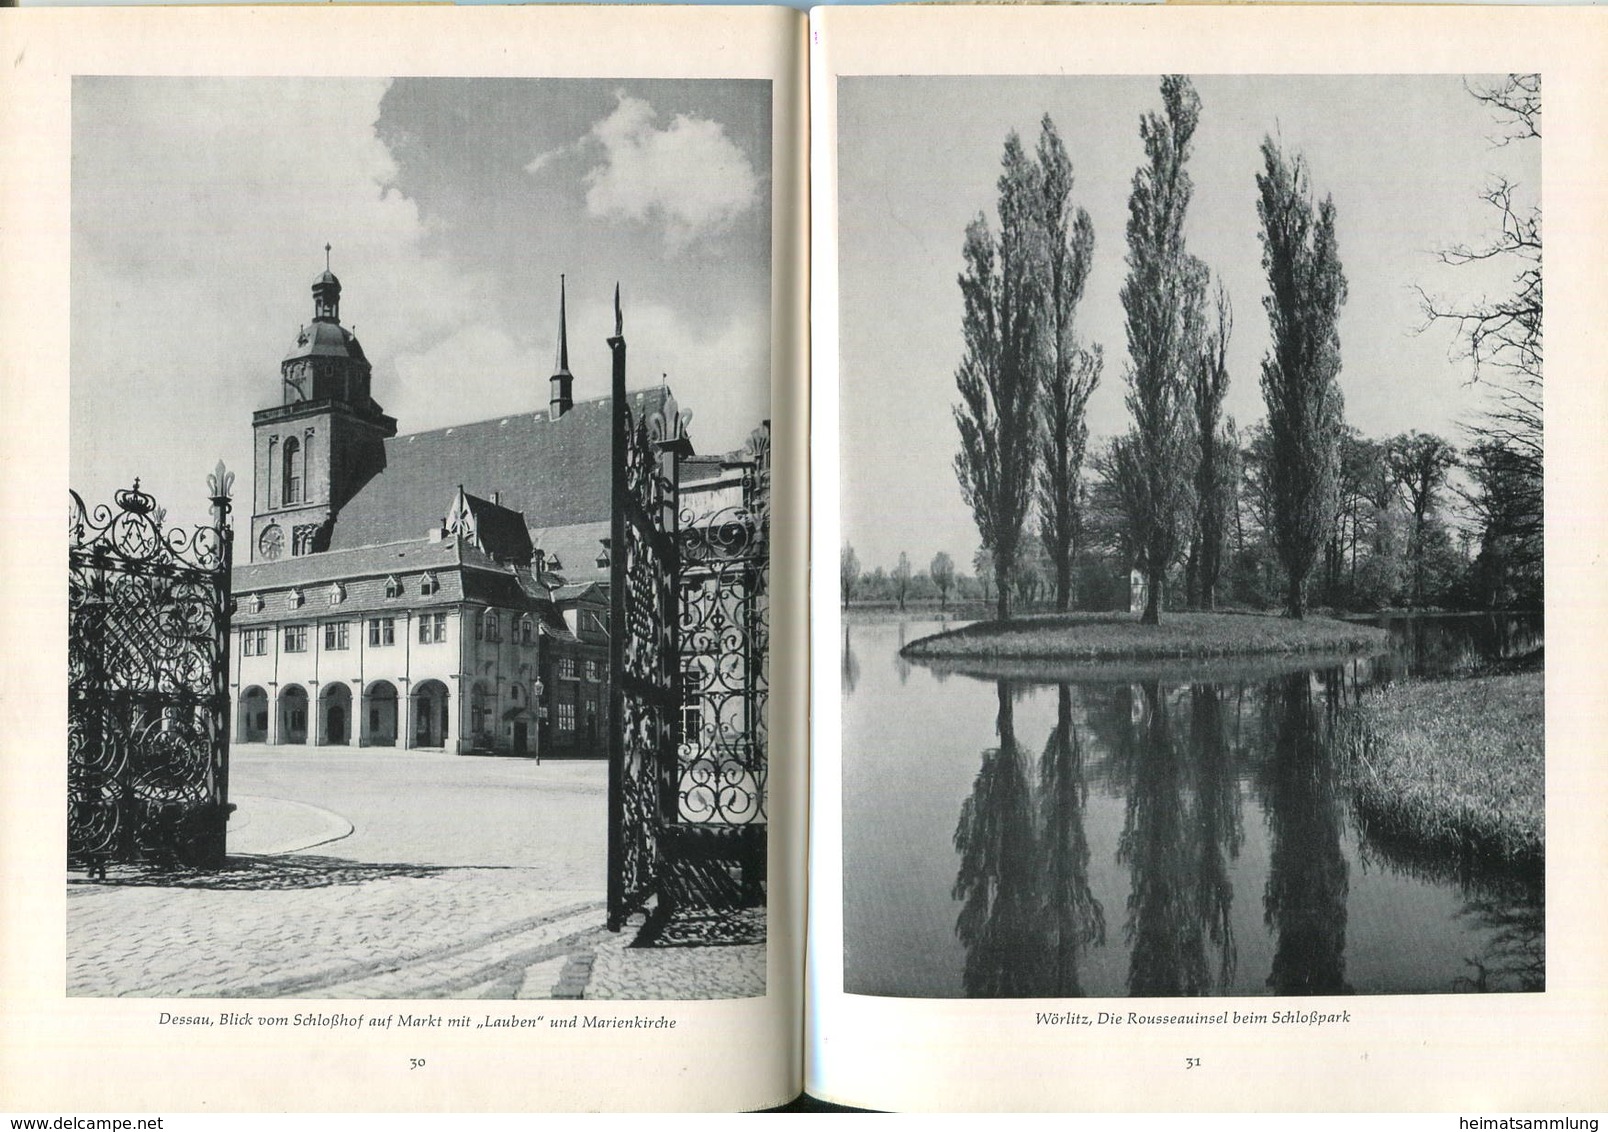 Sachsen-Anhalt 1963 - 48 Seiten Mit 50 Abbildungen - Text Karl Rauch - Langewiesche Bücherei - Saxe-Anhalt